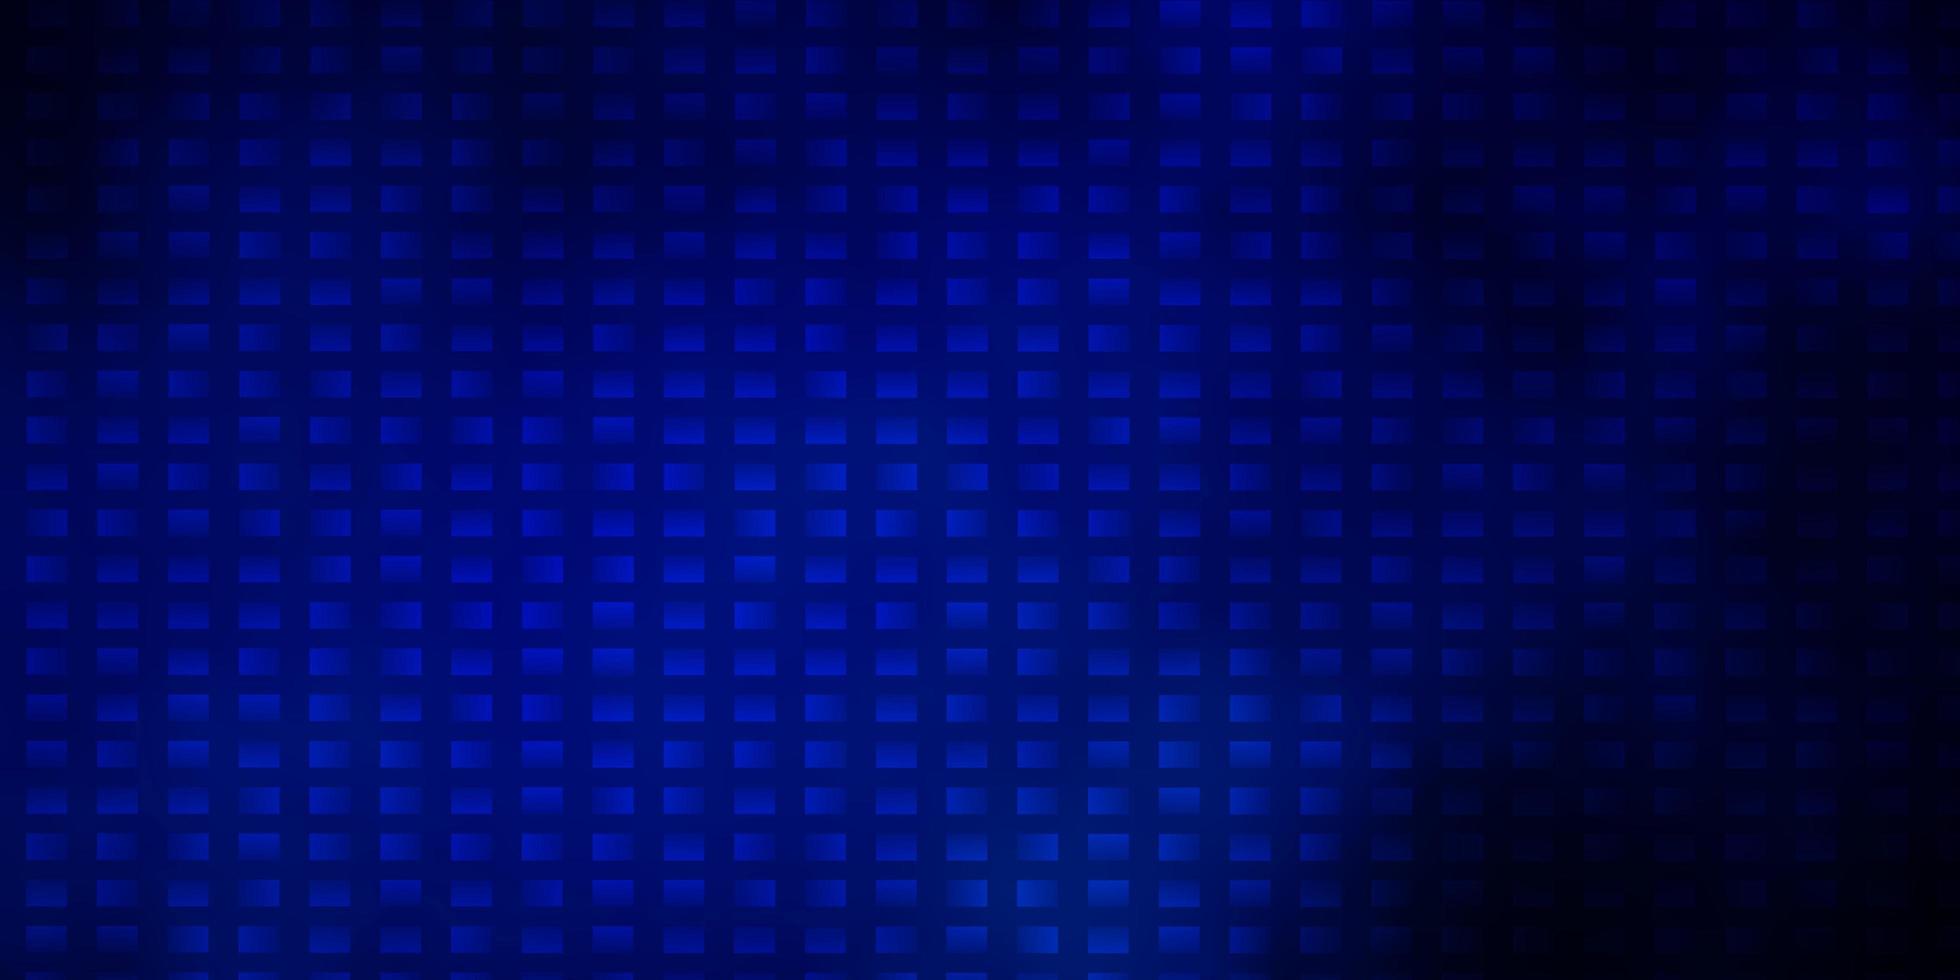 modèle vectoriel bleu foncé avec des rectangles